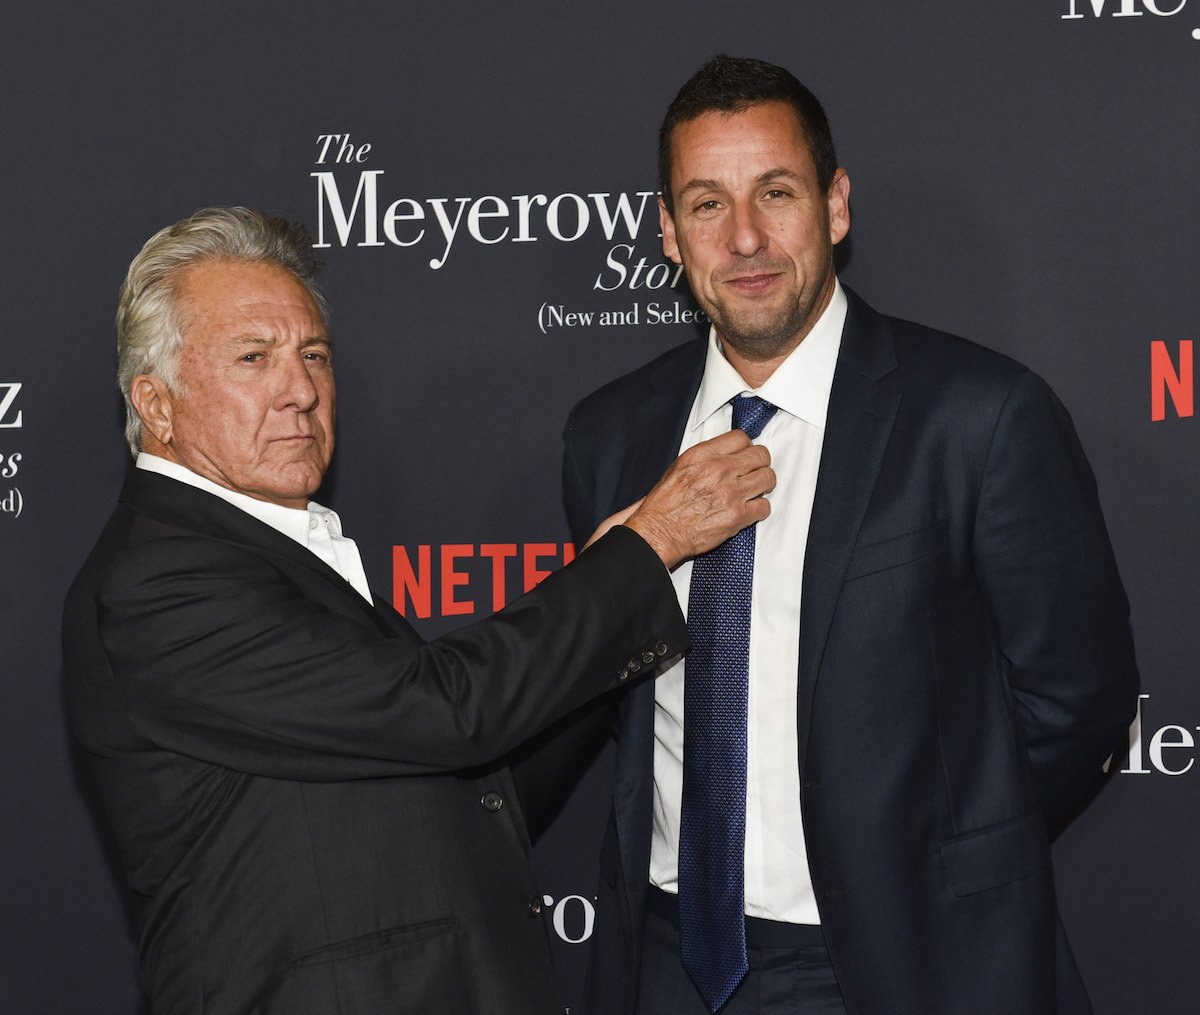 Dustin Hoffman grabs Adam Sandler's tie during the screening of Netflix's "The Meyerowitz Stories